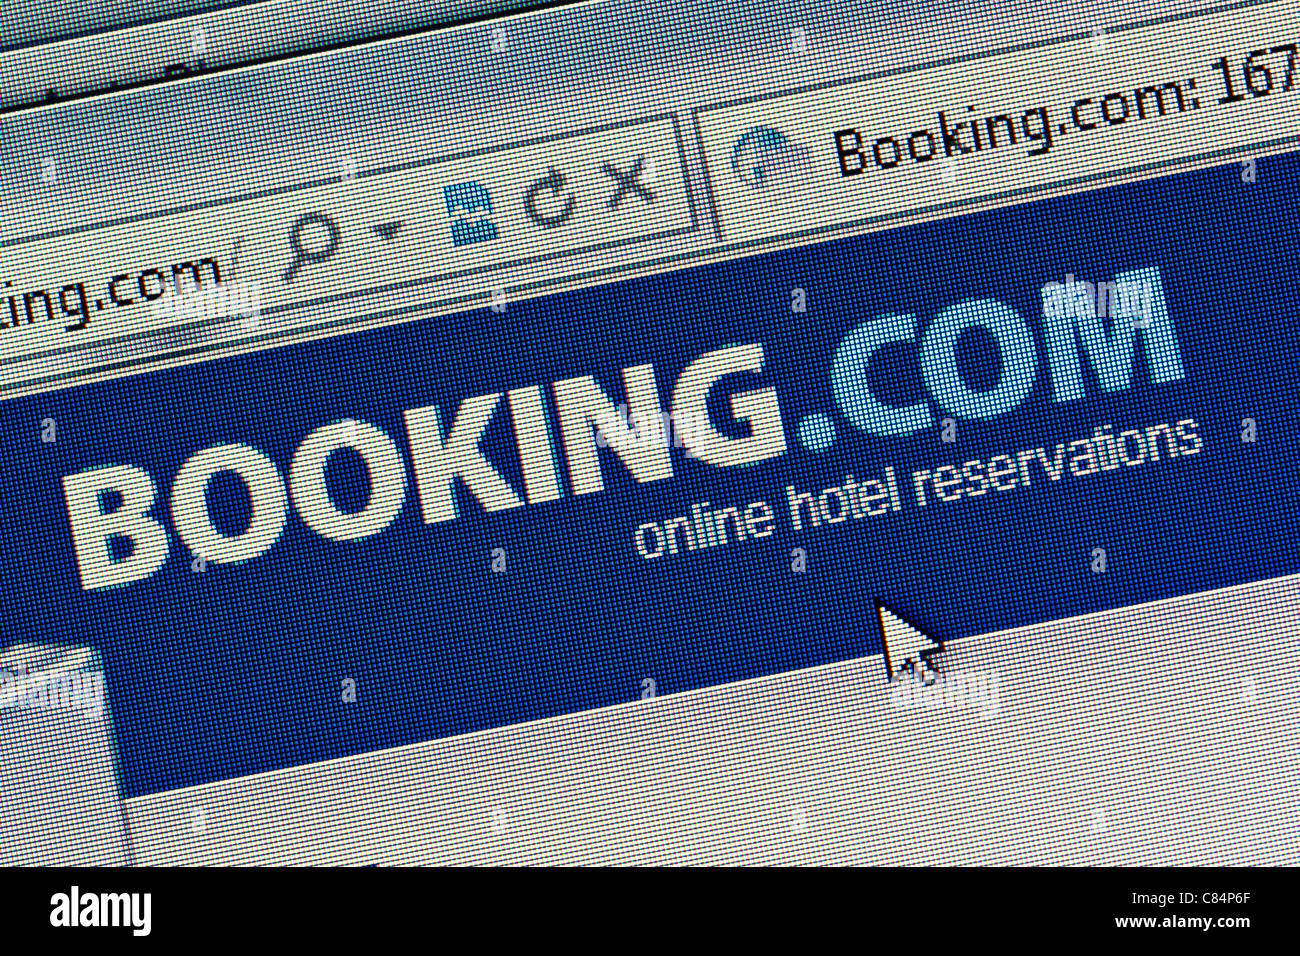 Booking.com logo and website close up Stock Photo